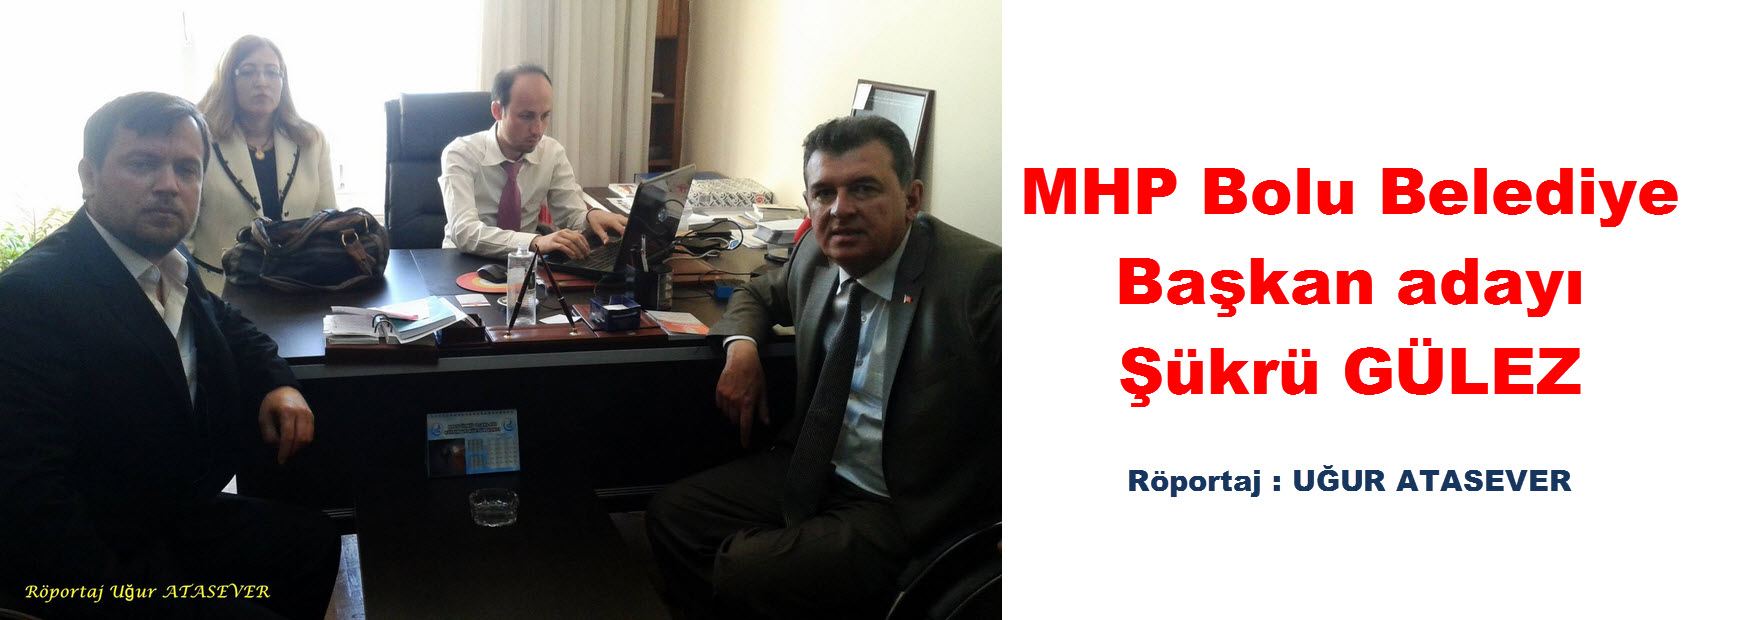 MHP Bolu Belediye Başkan adayı Şükrü GÜLEZ röportajı